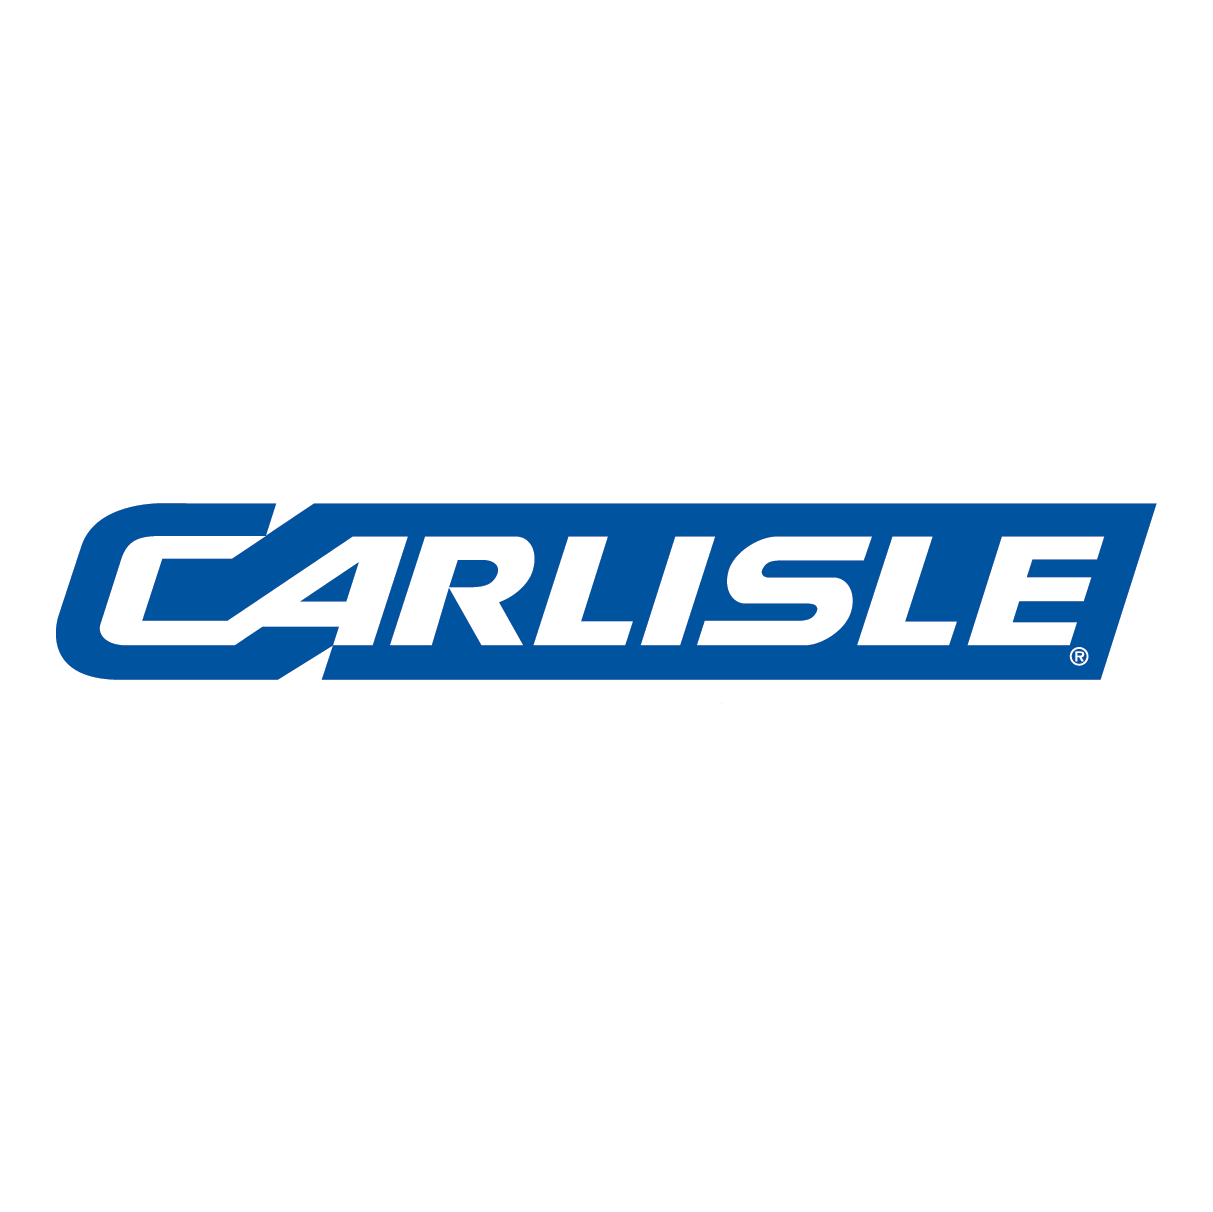 Carlisle logo.png